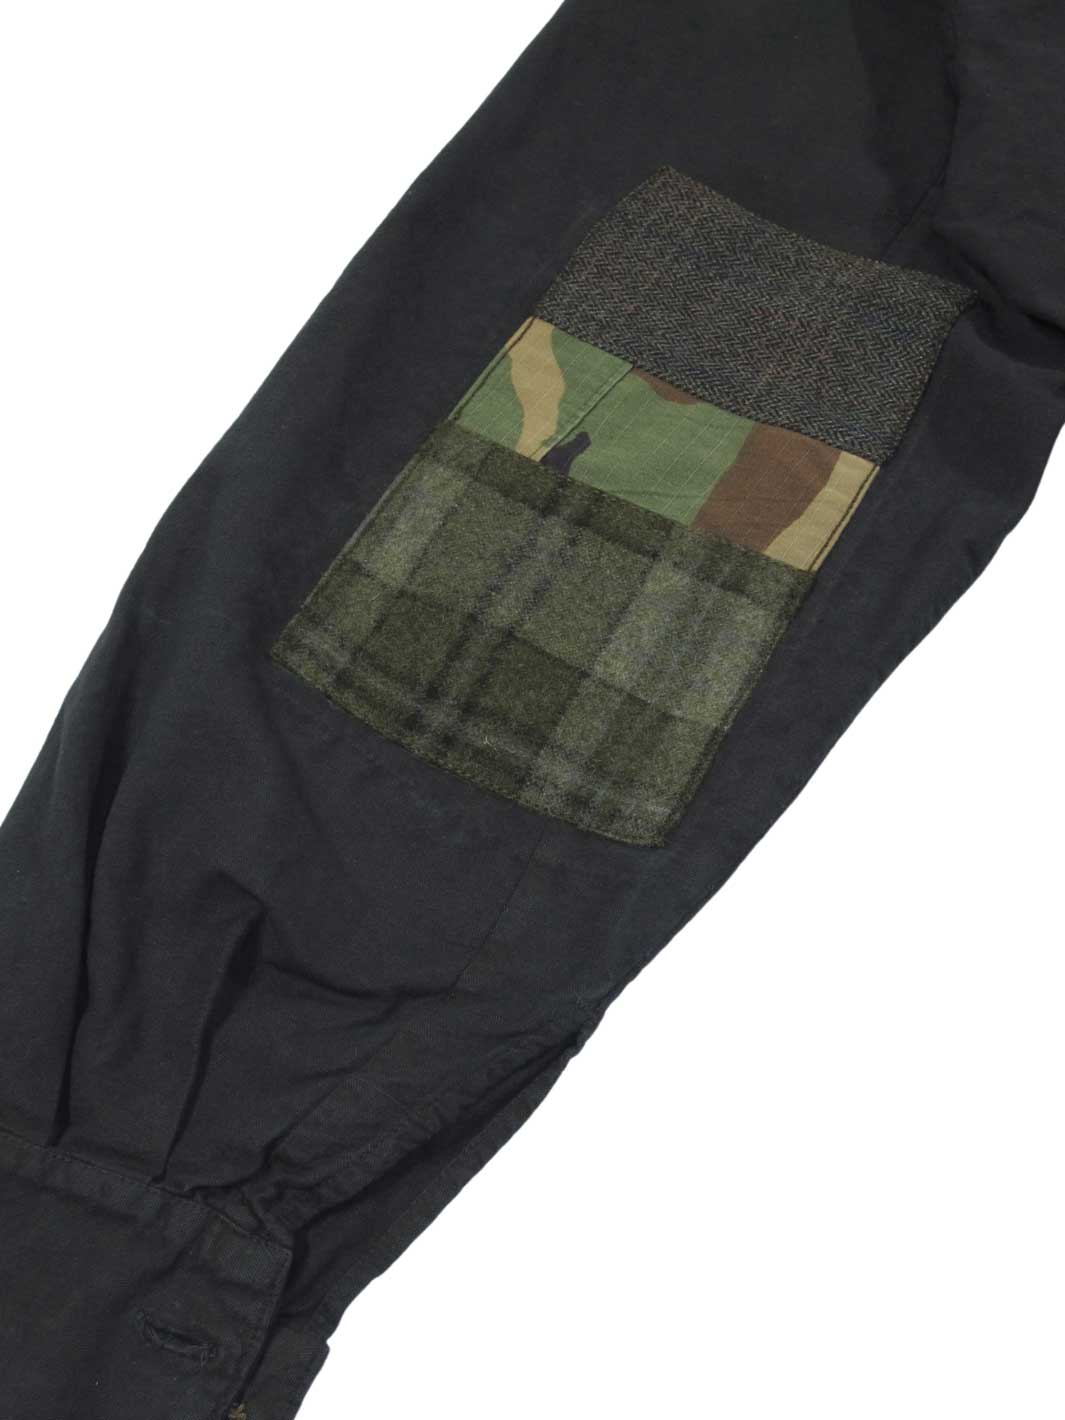 Unisex Vintage Militär Bluse anthrazit Größe L grün - braun - olive karierter Ellbogen Patch mit Camouflage Muster gemixt